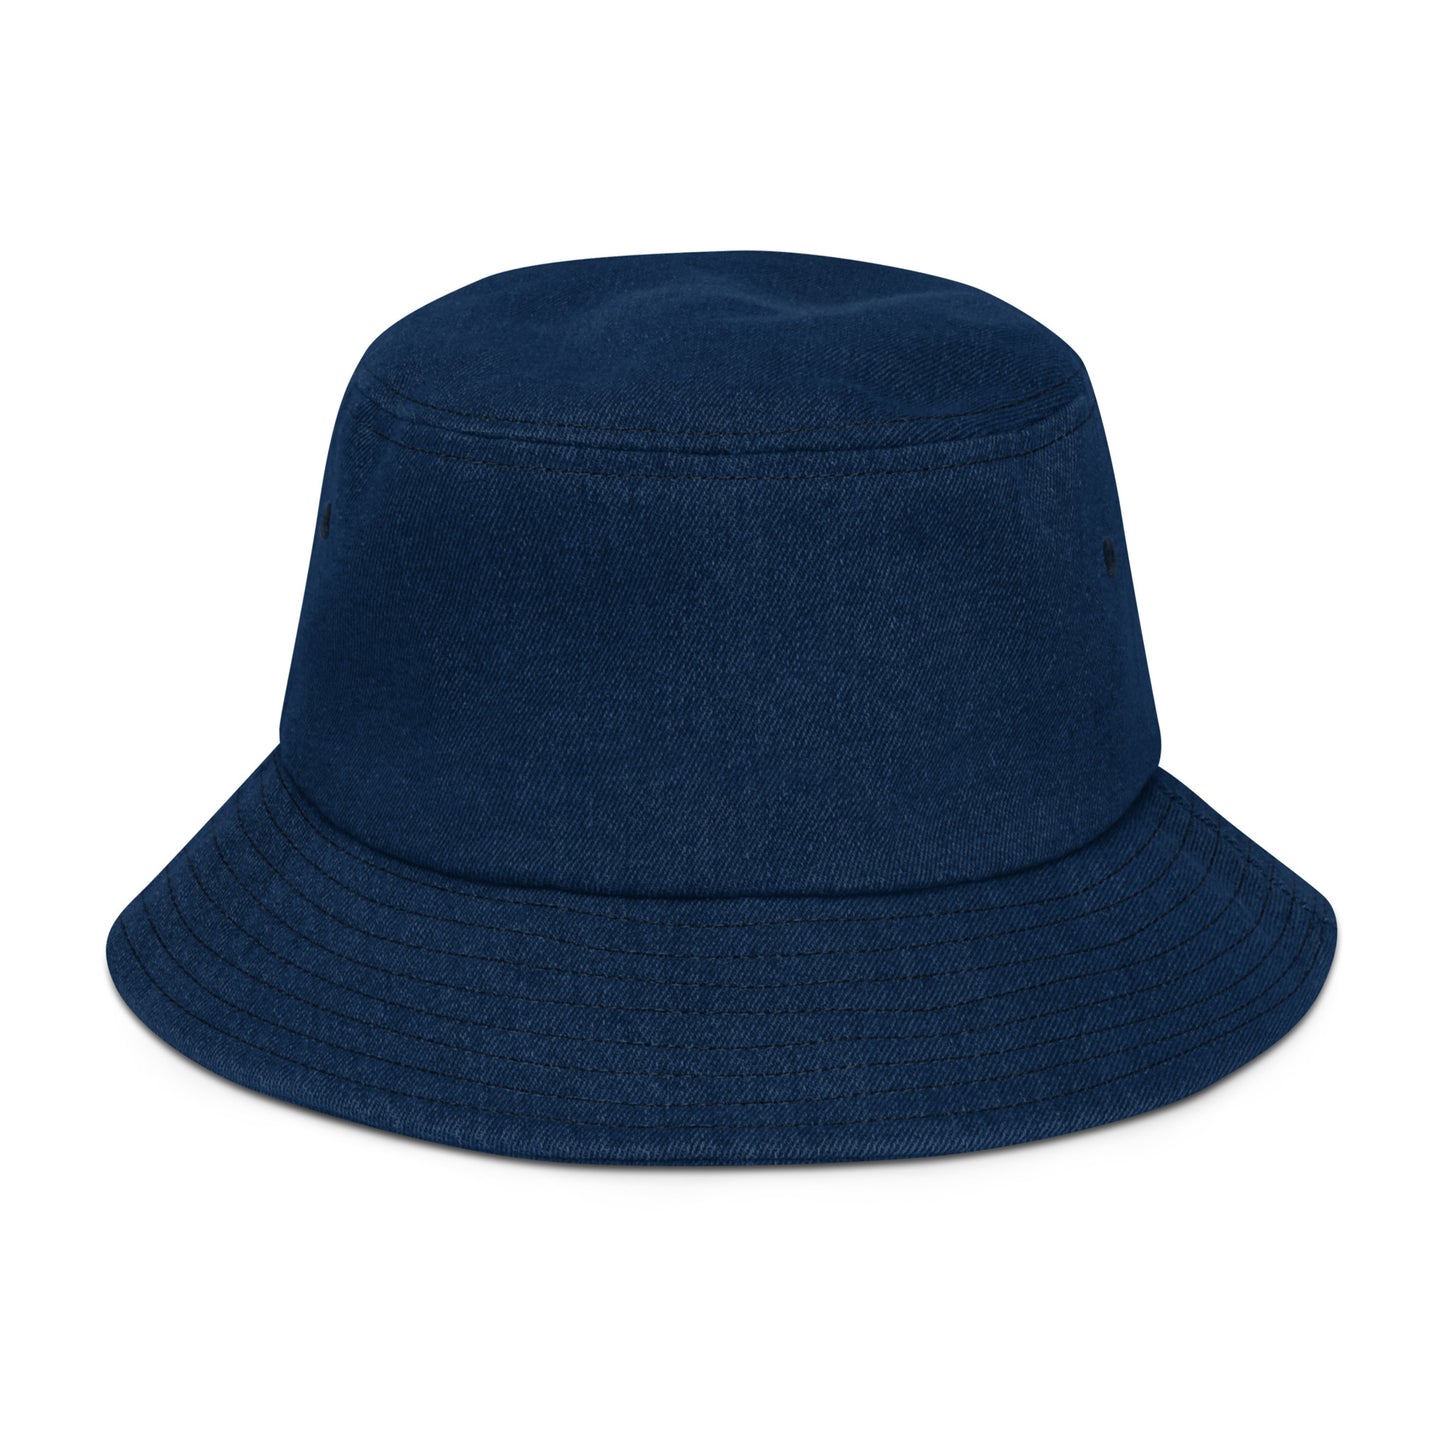 P-BURGH - Denim bucket hat